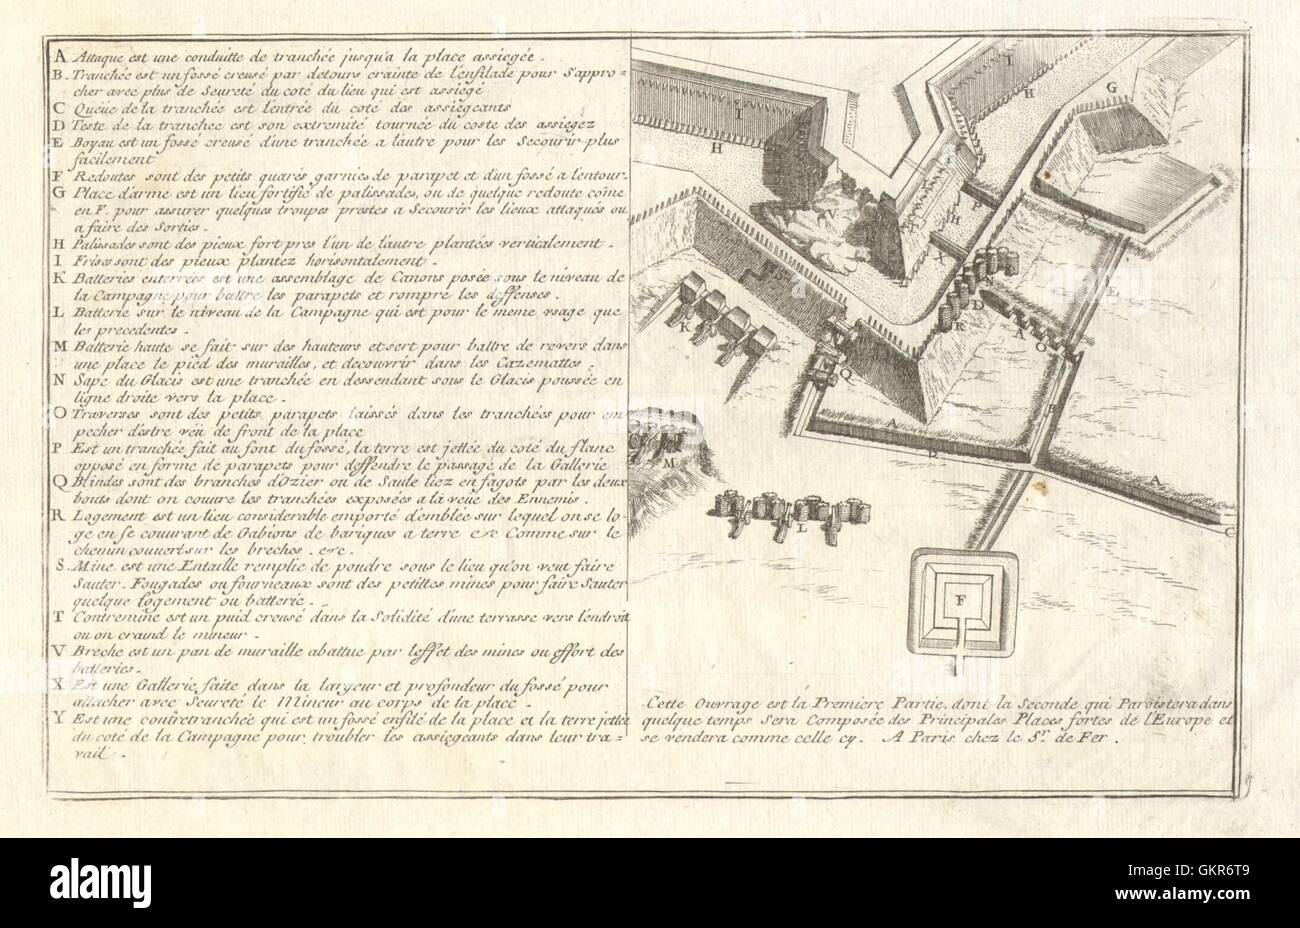 Design für defensive Verstärkungen für eine befestigte Stadt. Militaria. DE FER, 1705 Stockfoto